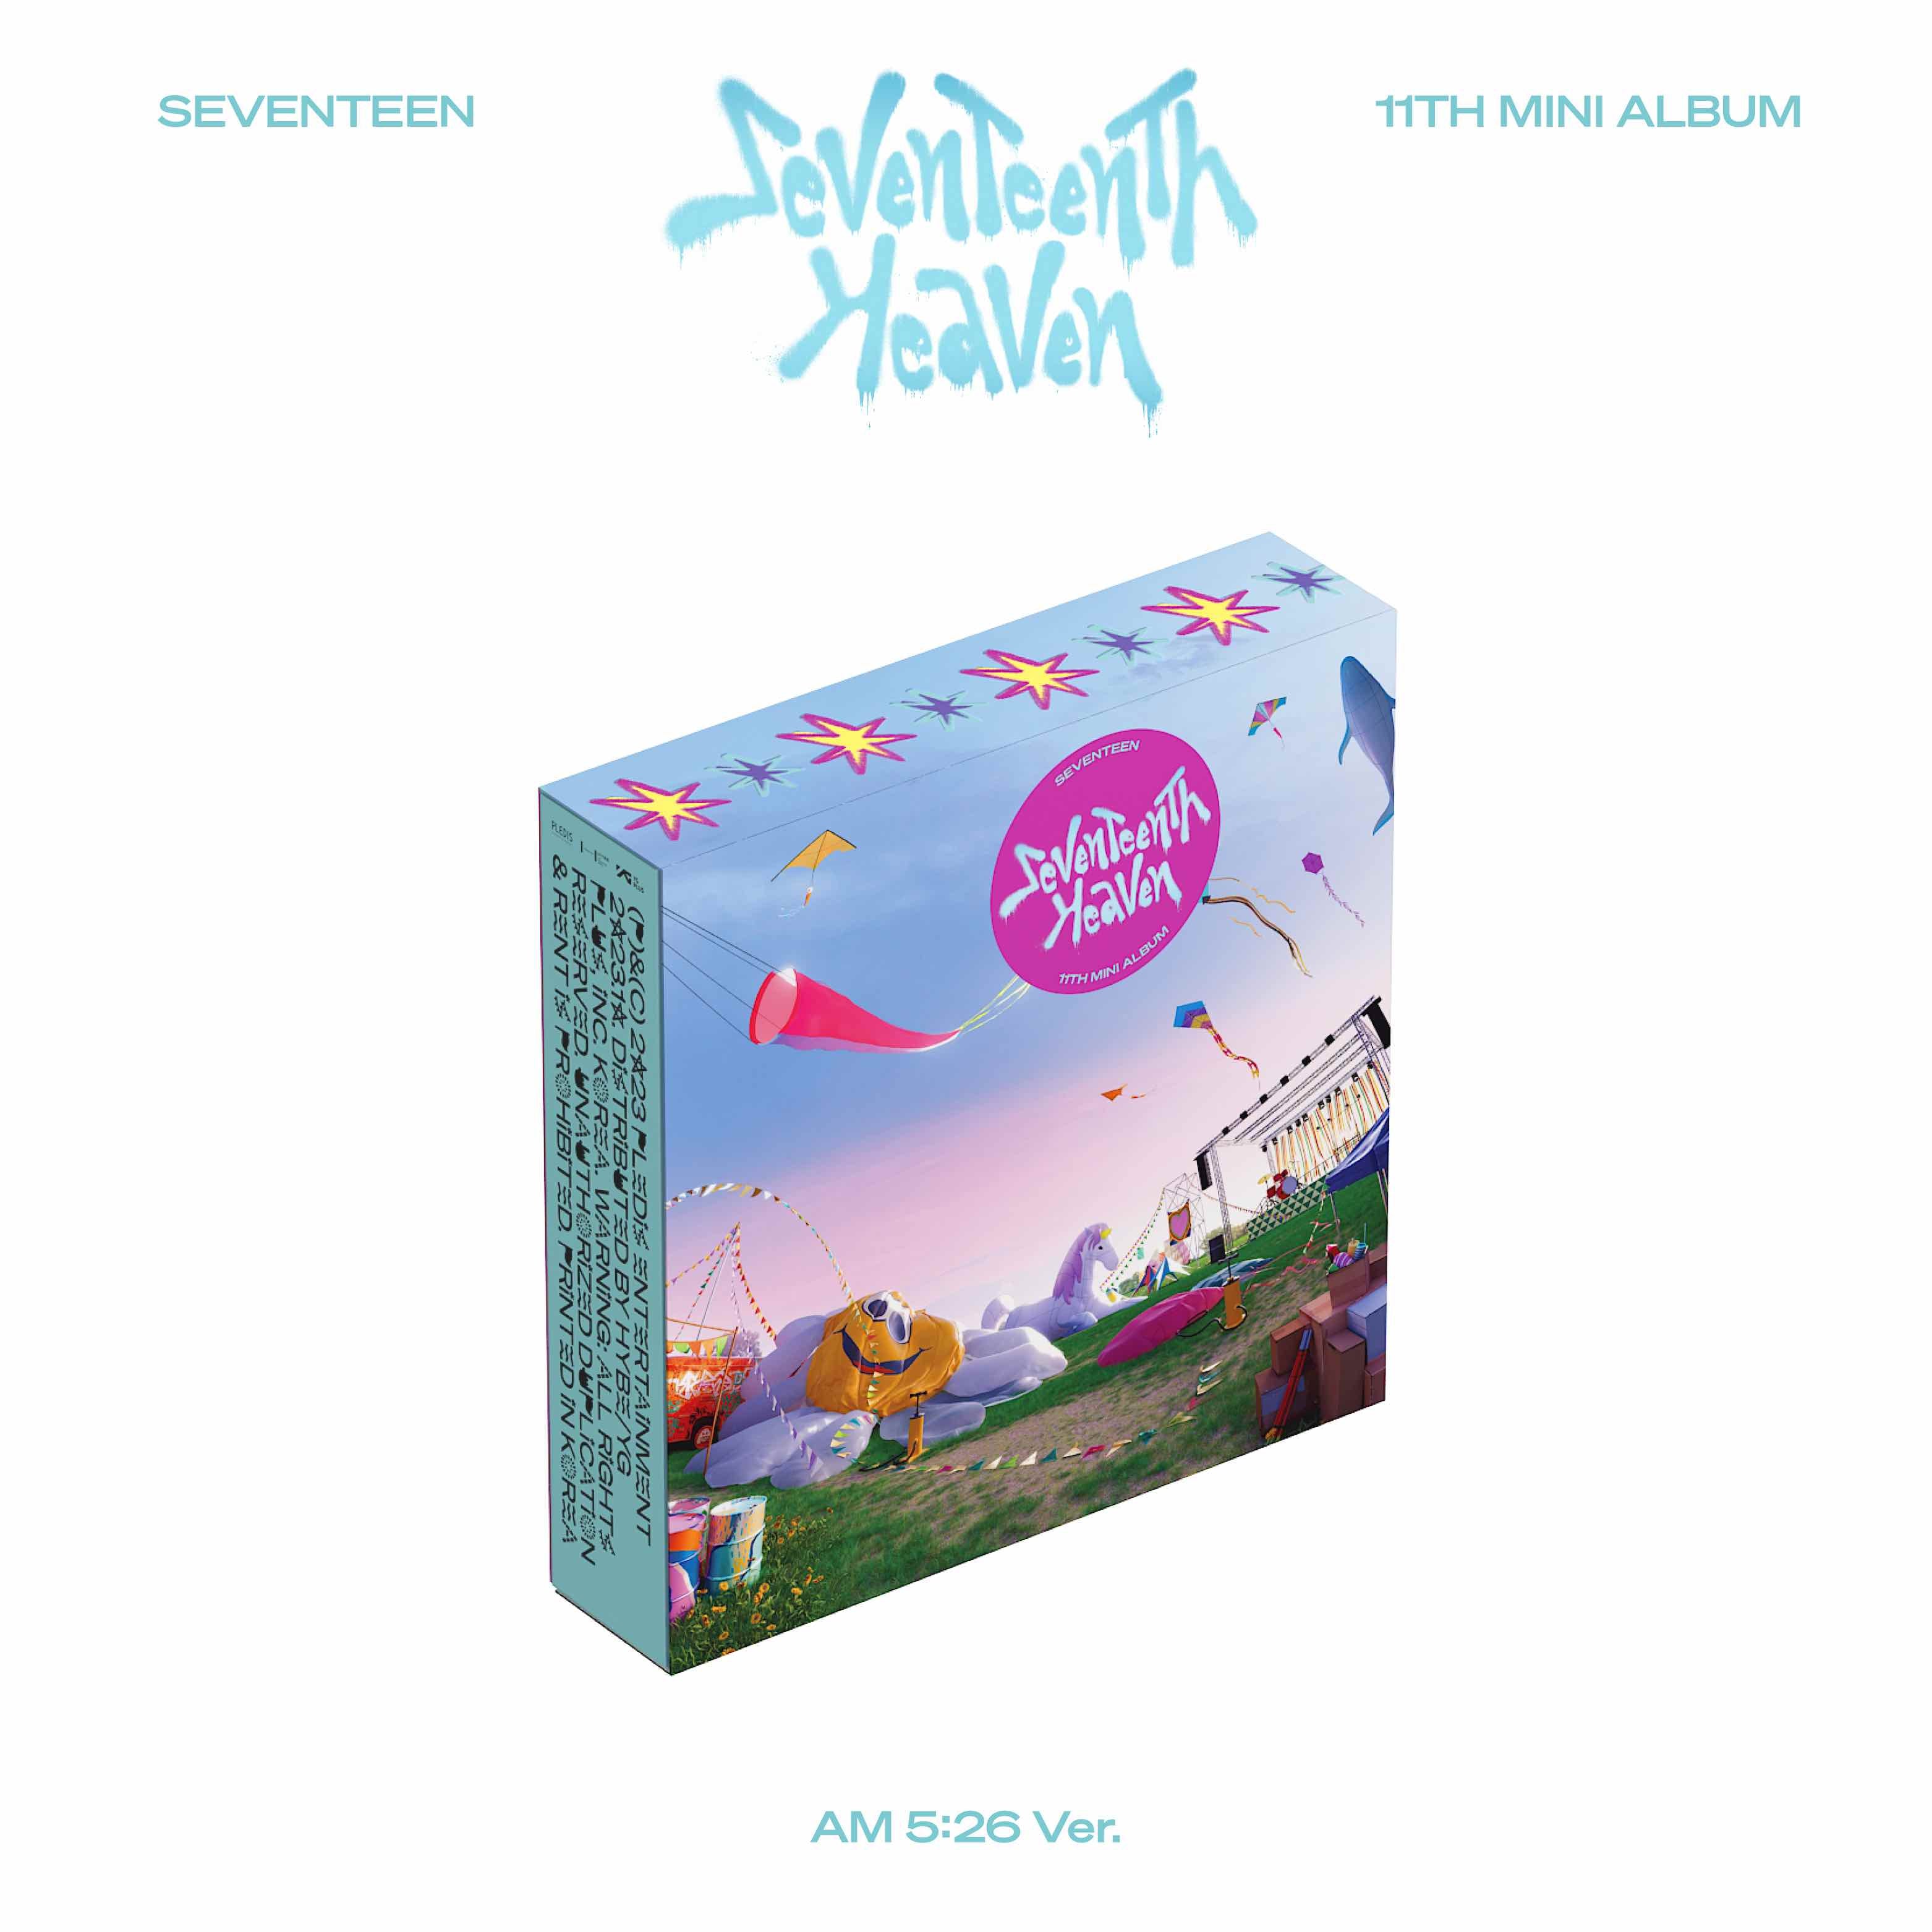 SEVENTEEN - Seventeenth Heaven (AM 5:26 Version): CD Box Set 